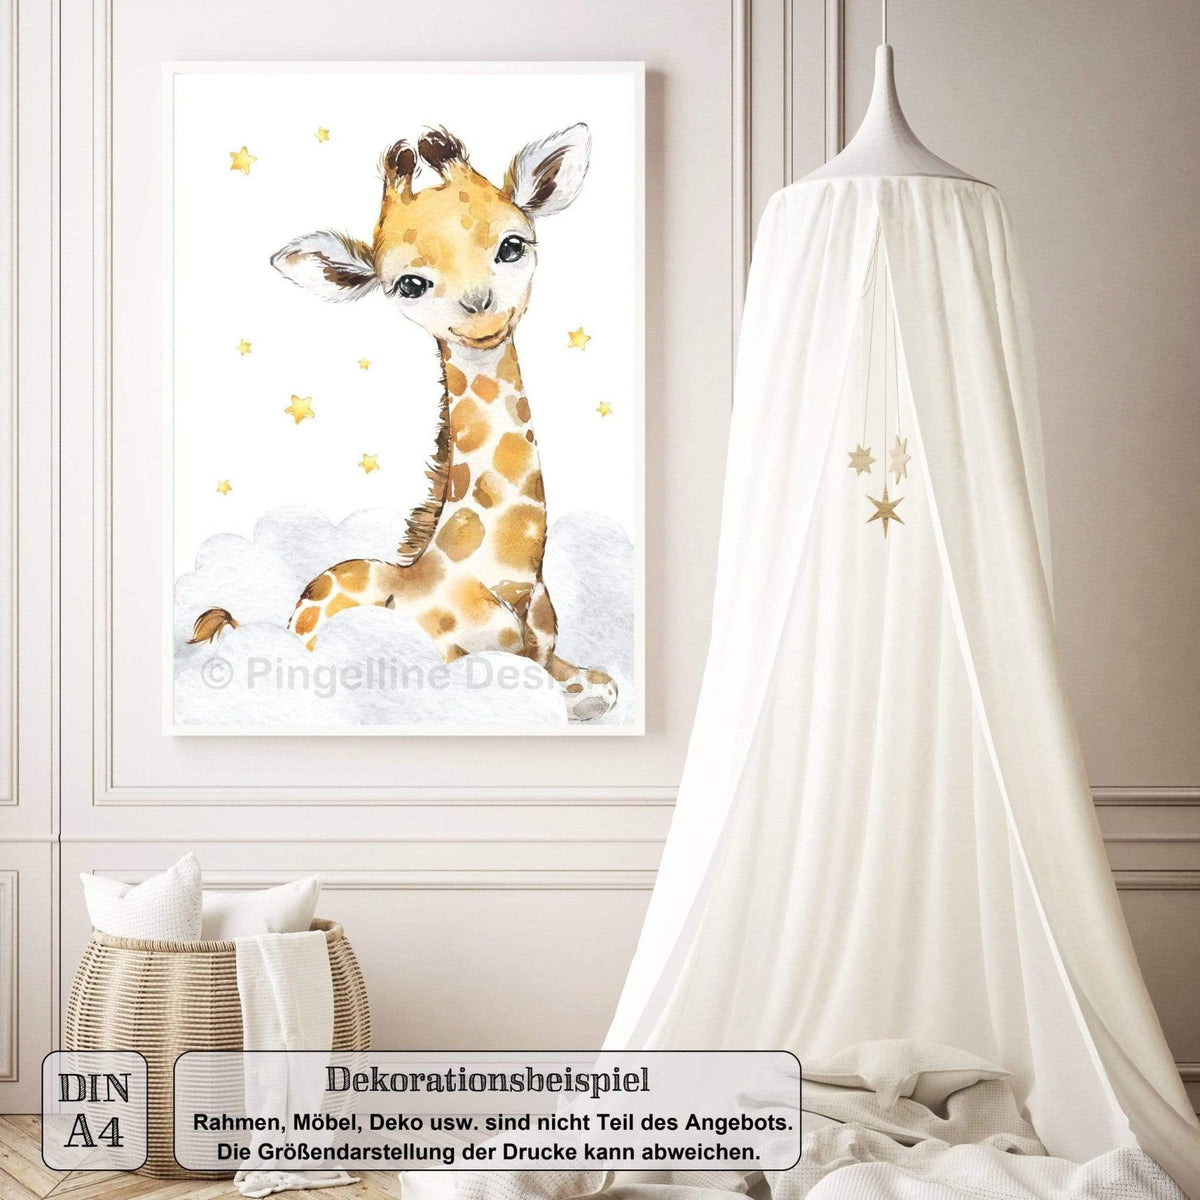 / Design 4er A4 Kinderzimmer Tiere Bilder - Safari A3 Set Pingelline